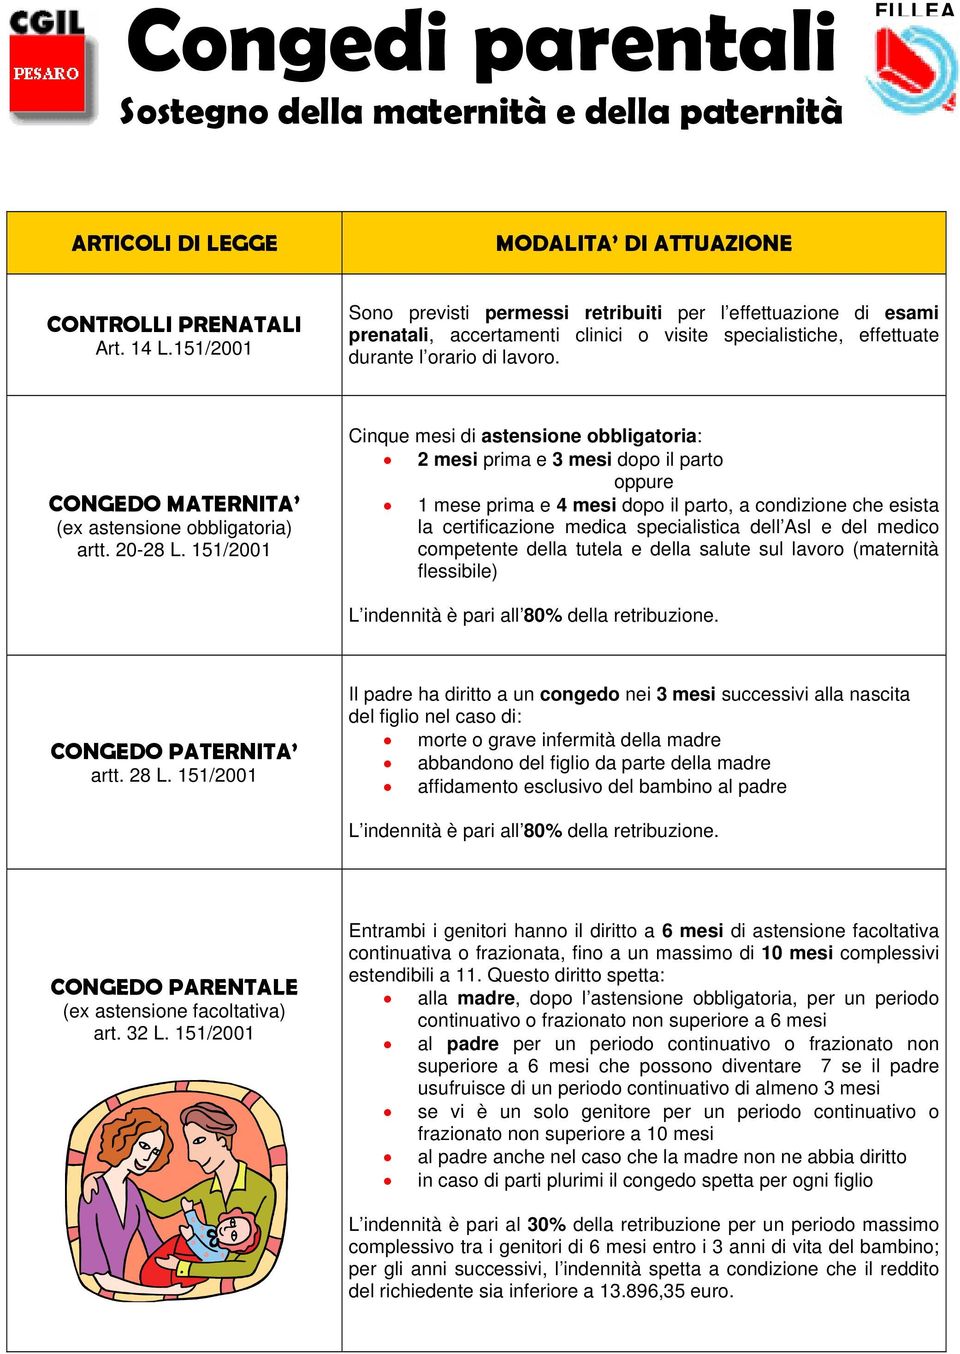 CONGEDO MATERNITA (ex astensione obbligatoria) artt. 20-28 L.